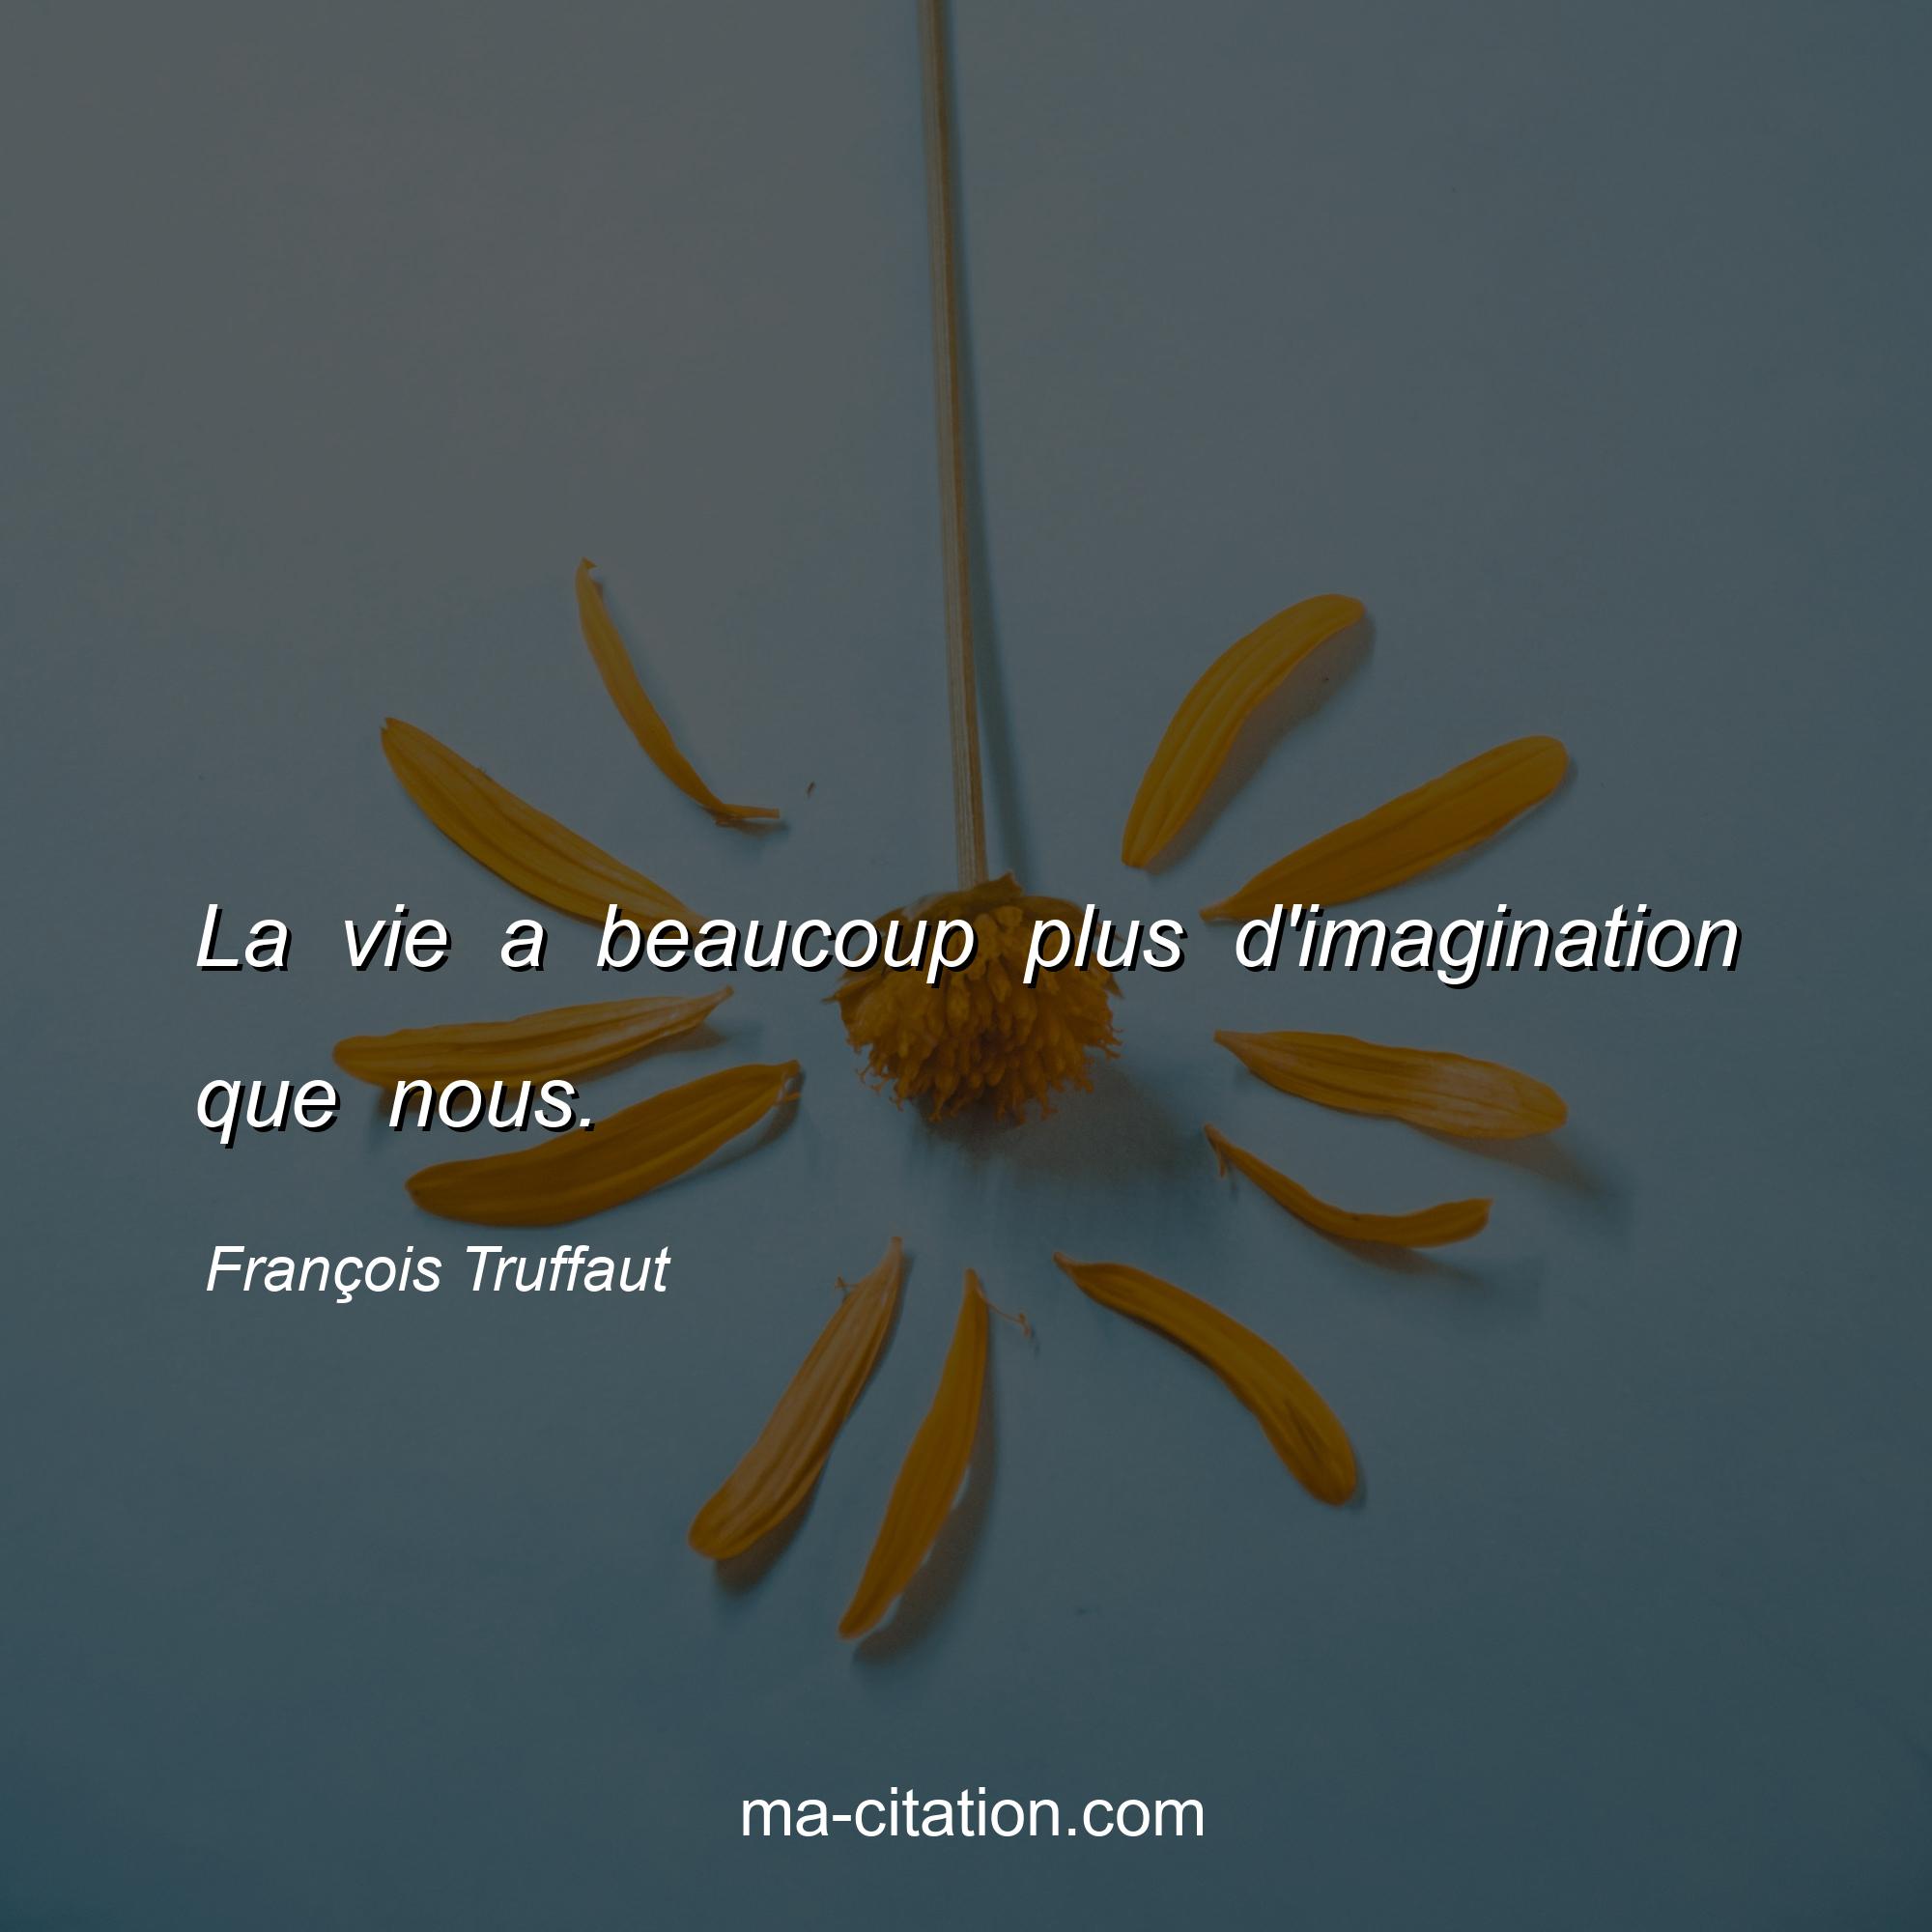 François Truffaut : La vie a beaucoup plus d'imagination que nous.